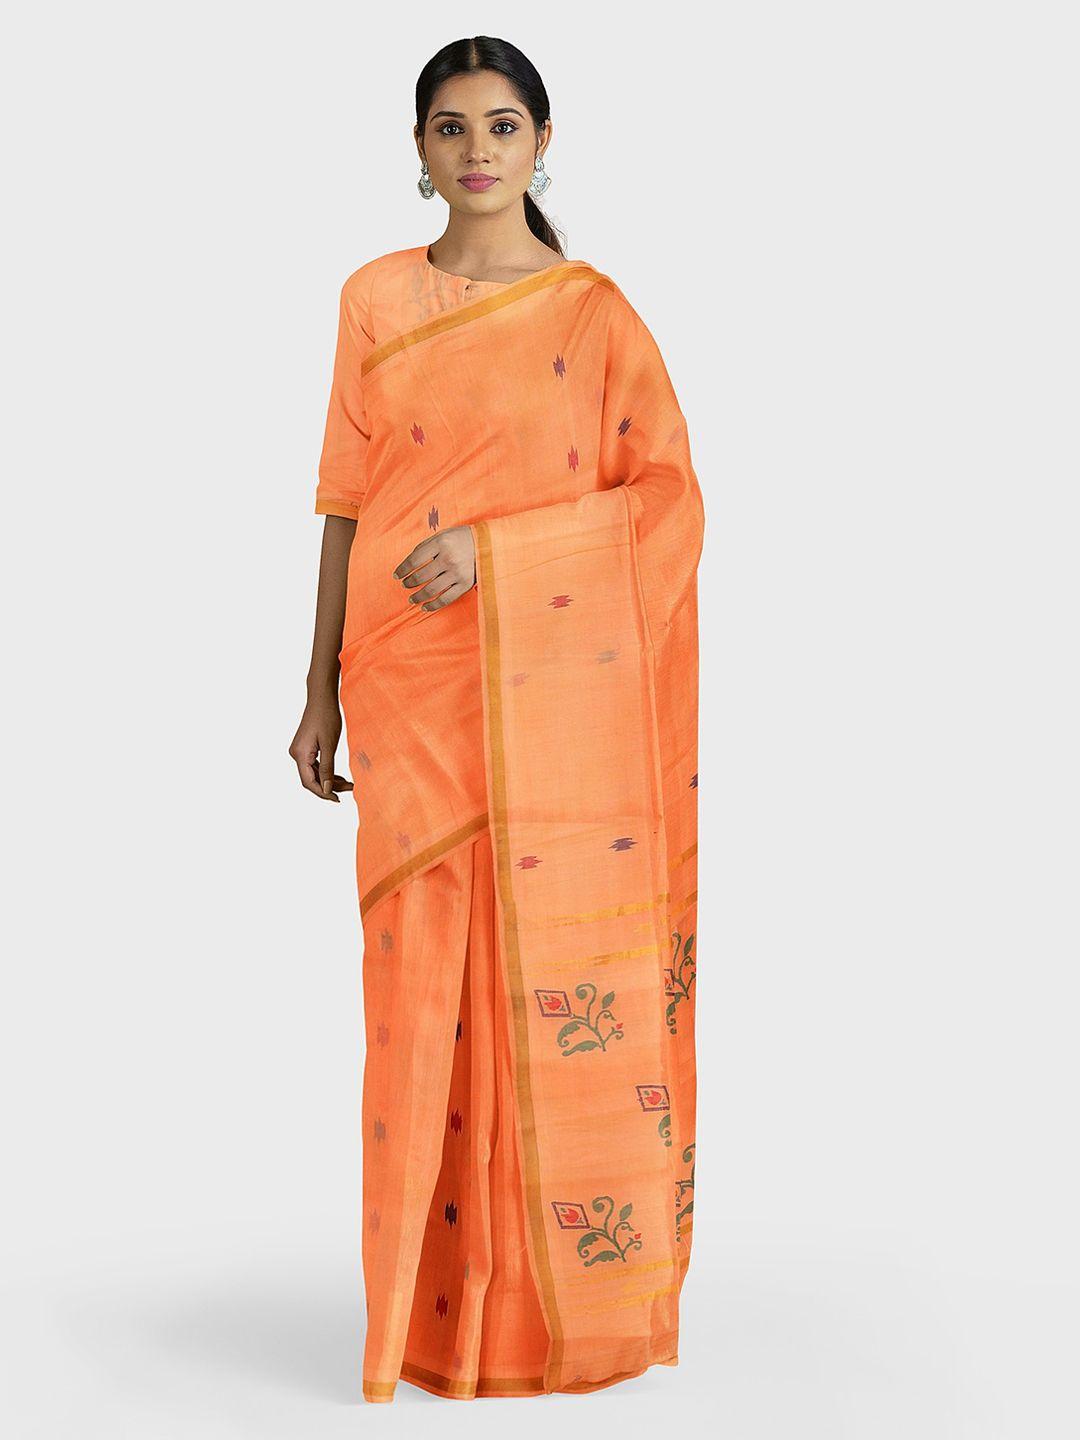 apco orange woven design pure cotton saree